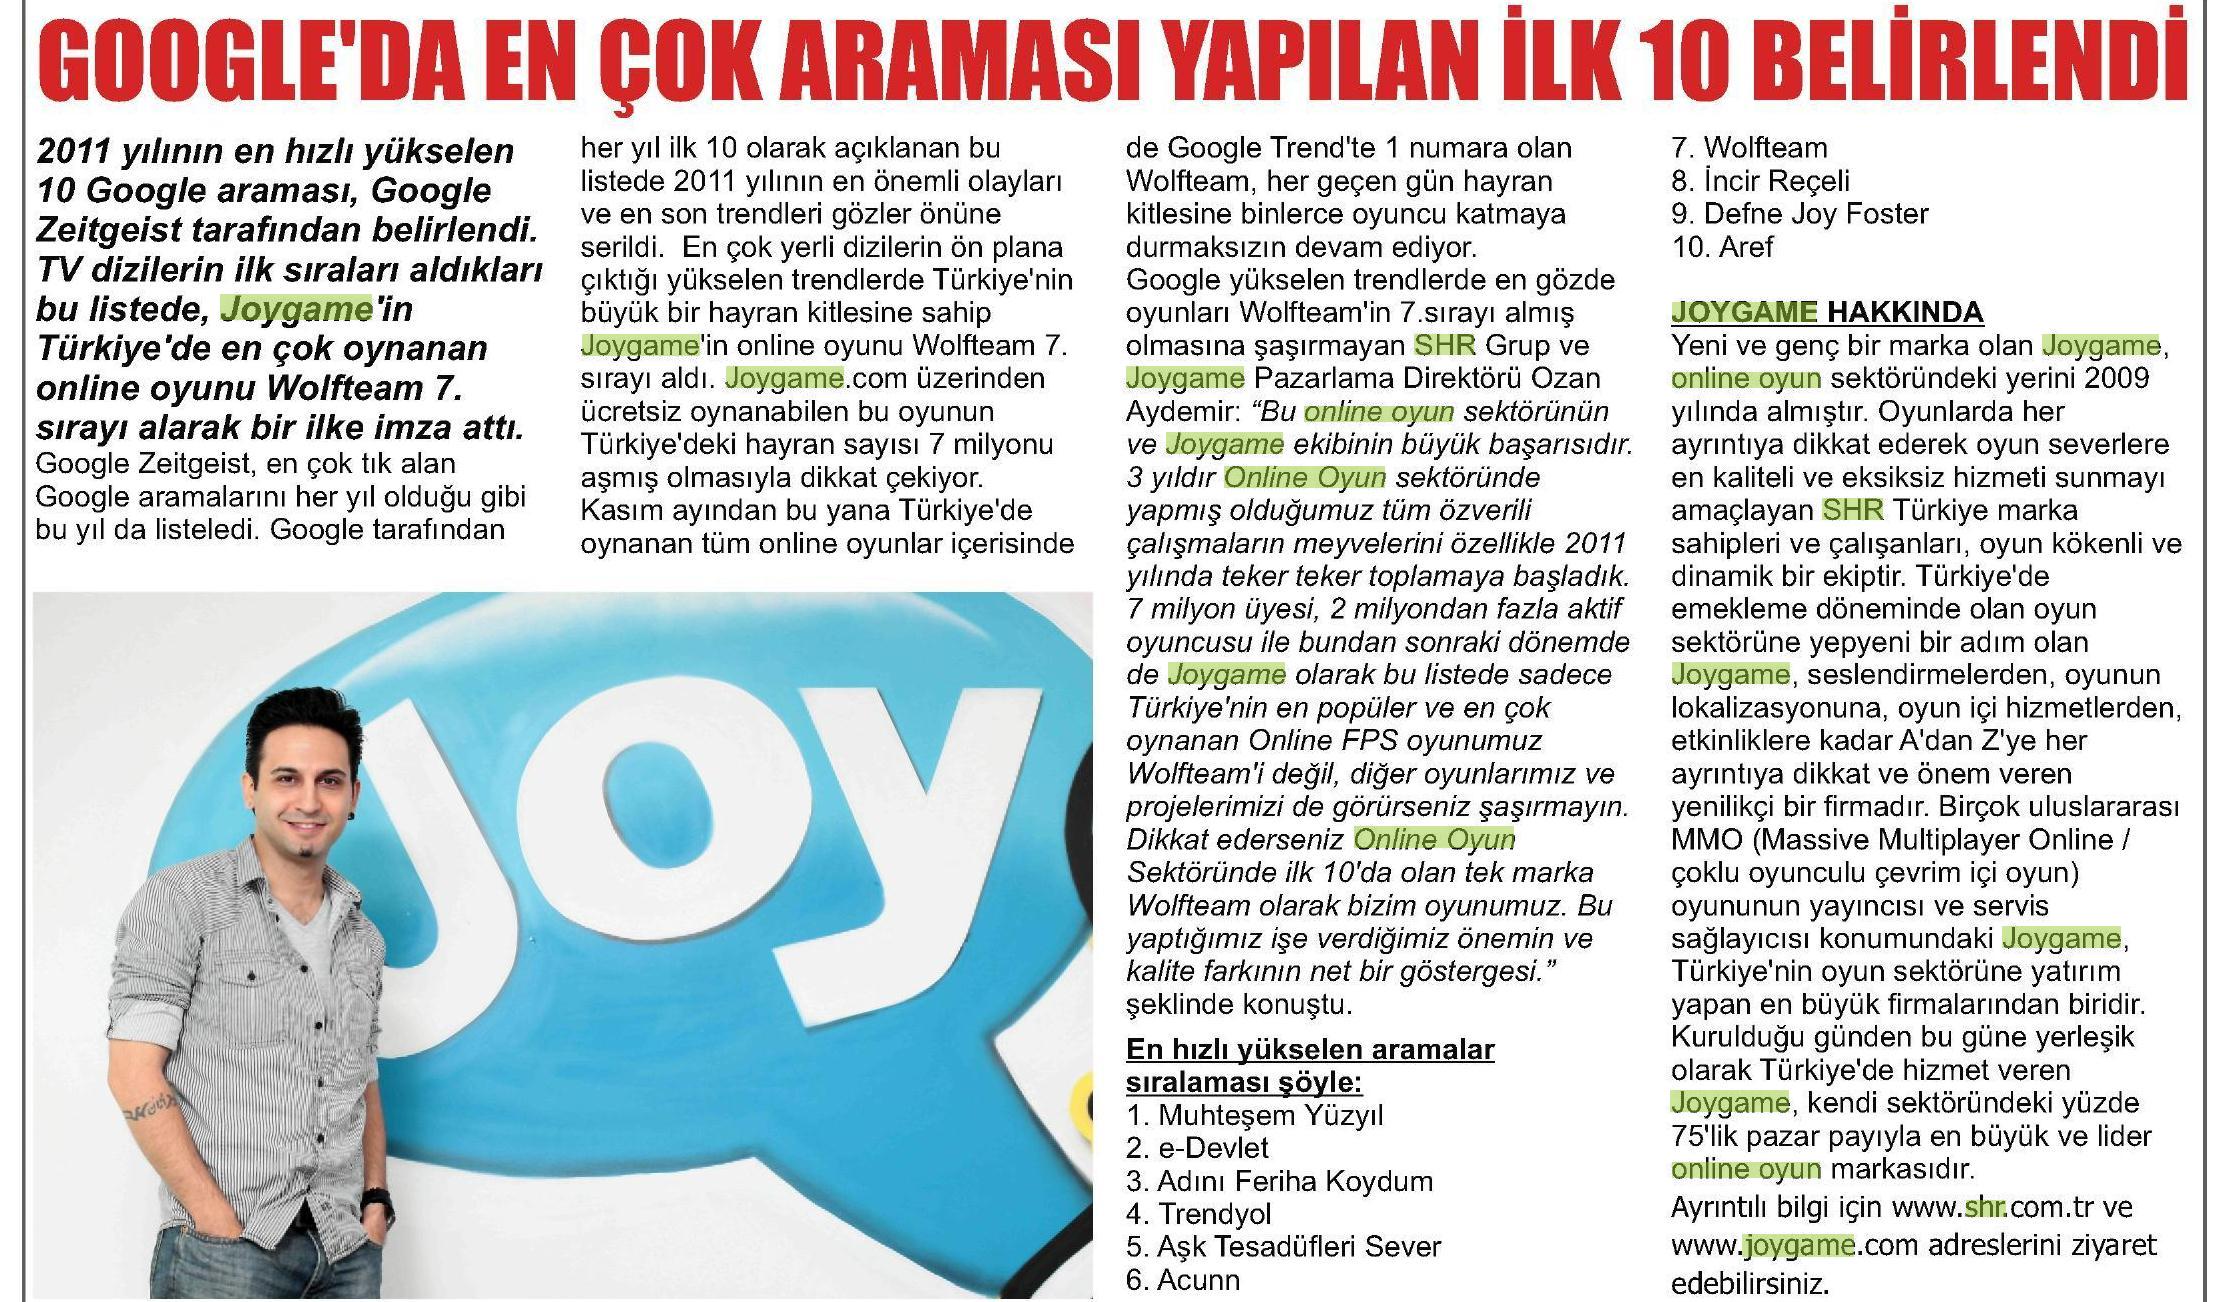 Netmarble-Turkey-Basin-Yansimasi-Vaziyet-Gazetesi-24-Aralik-2011